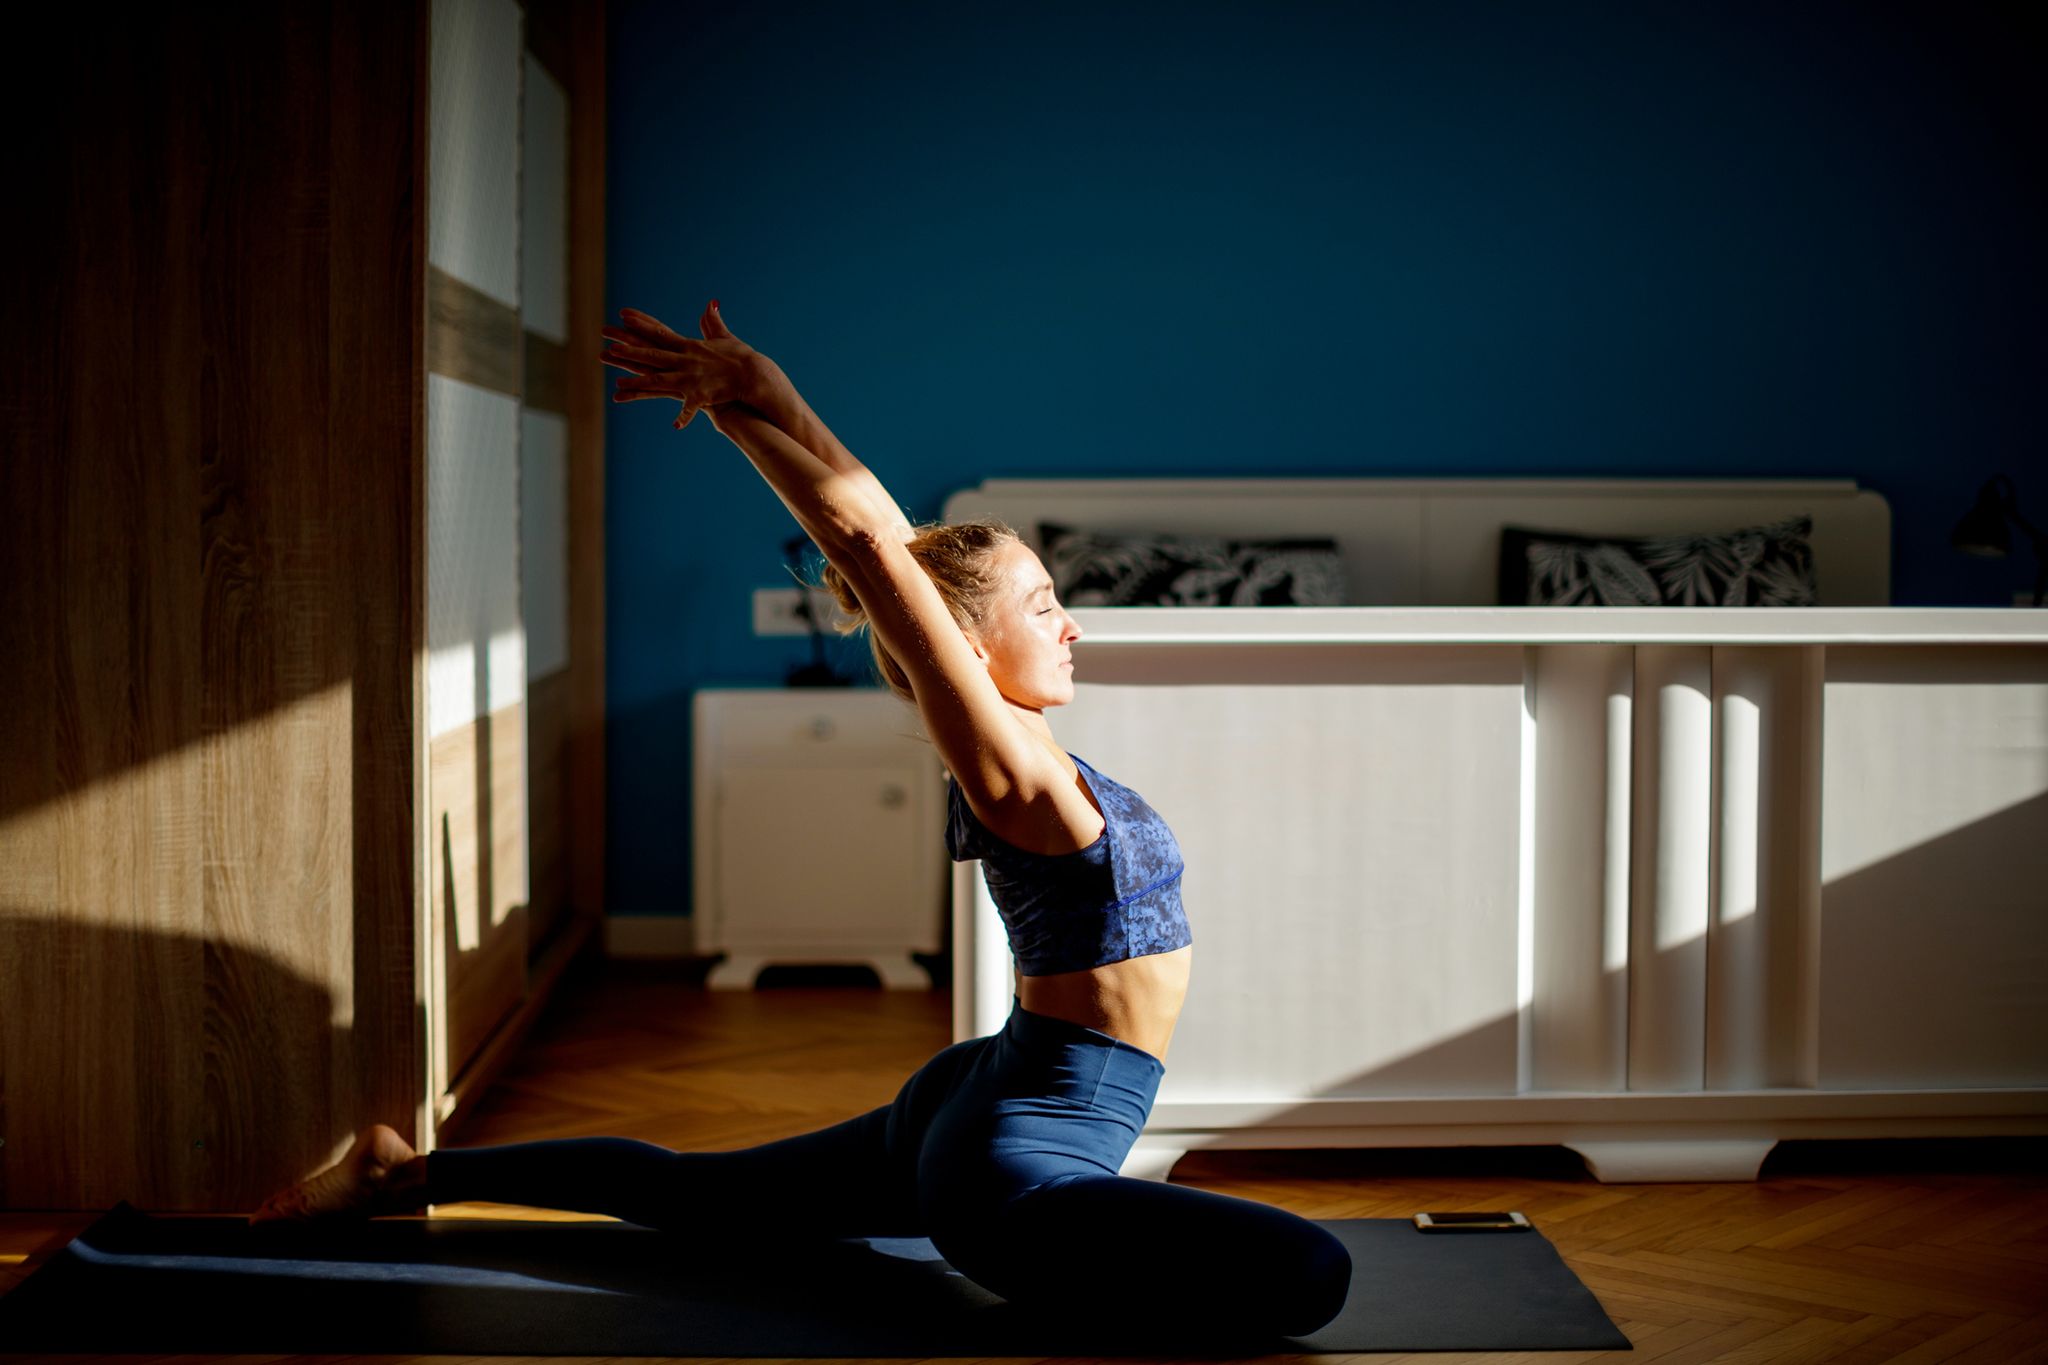 Posturas de yoga nivel avanzado - Hacer yoga en casa